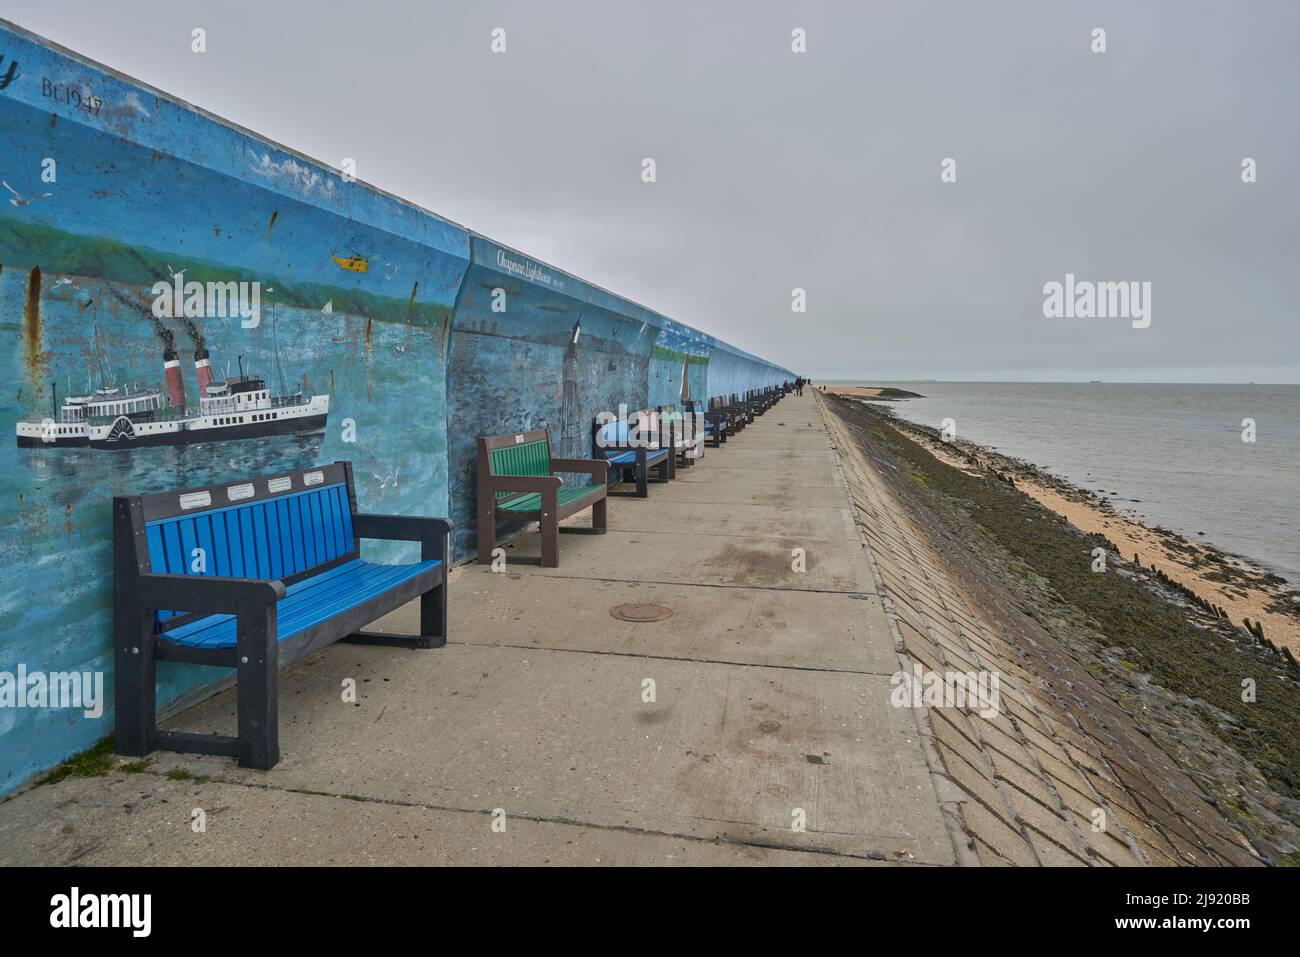 Panca al mare. Panca all'isola di Canvey., panca pubblica con posti a sedere Foto Stock